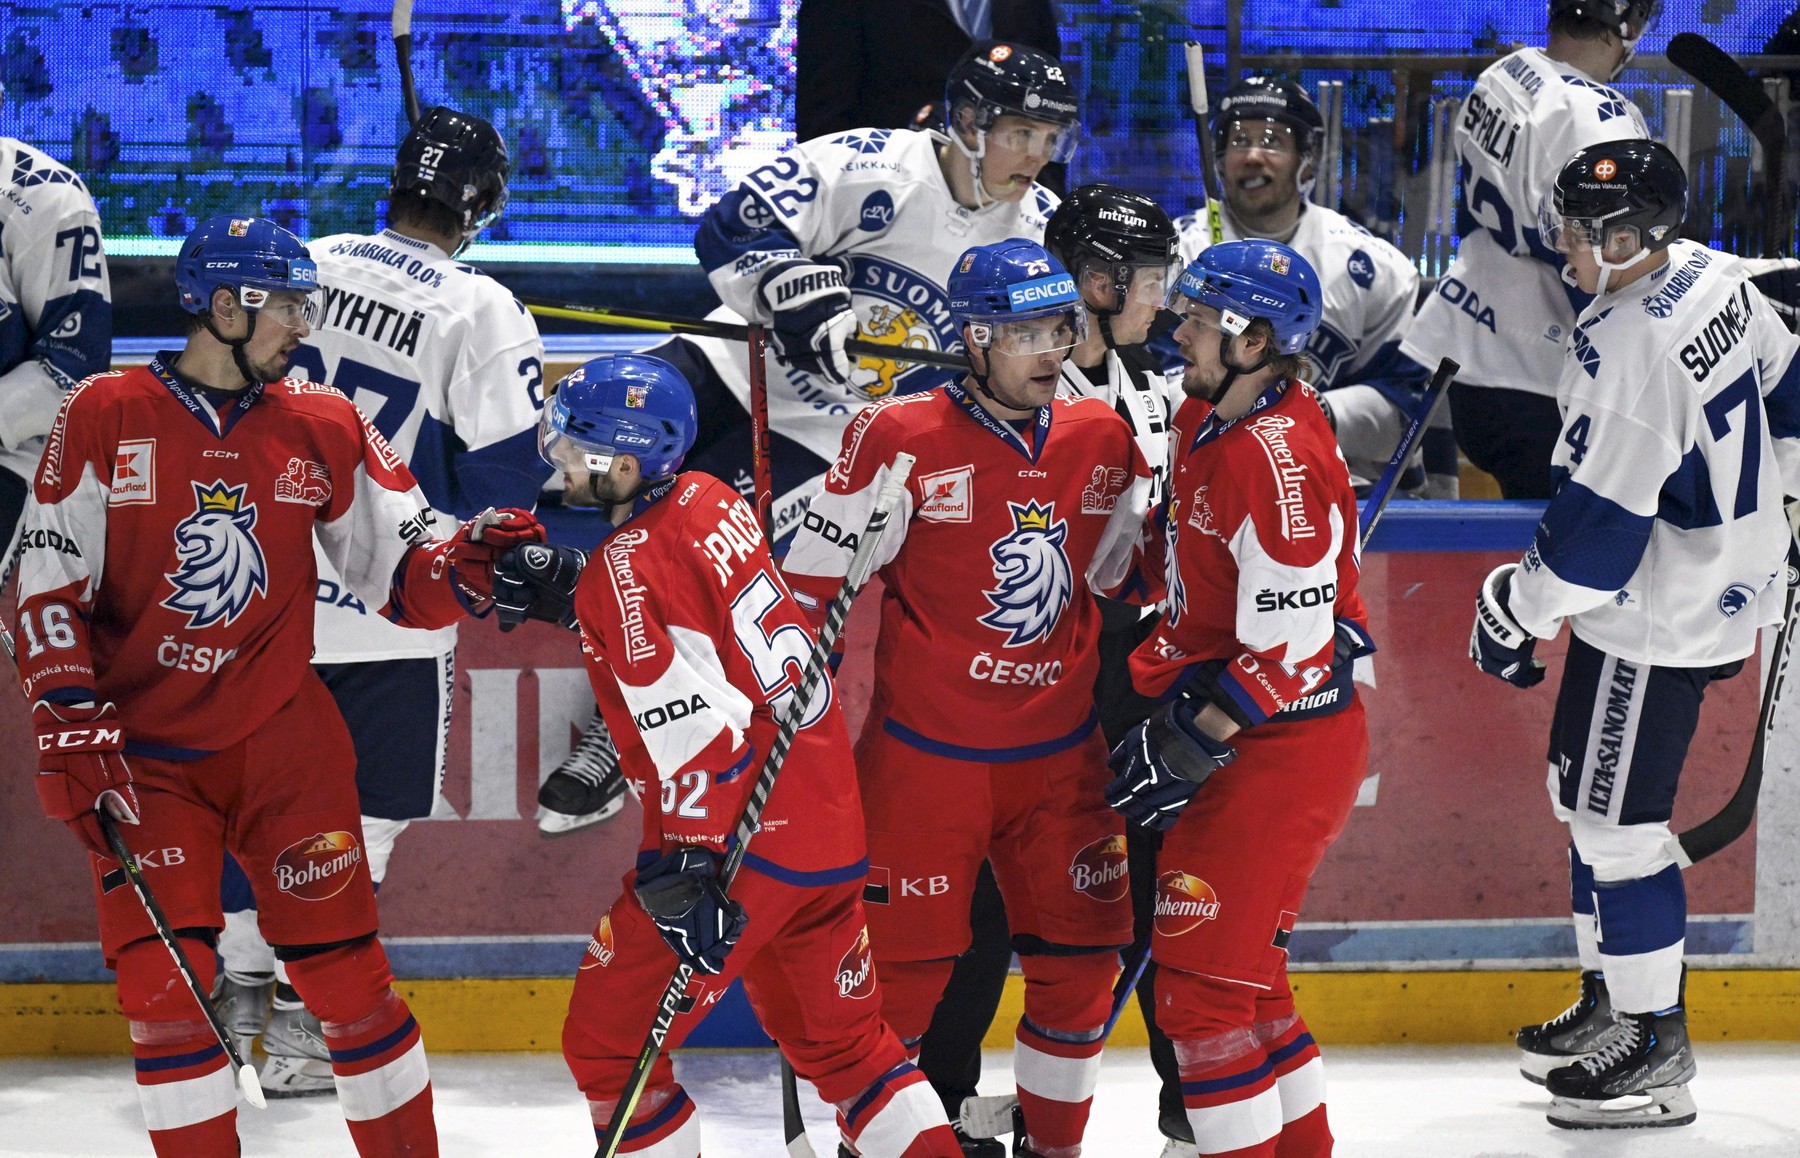 Lední hokej - Euro Hockey Tour - Švýcarské hokejové hry - hokejisté Česka a Finska - kde sledovat Finsko vs Česko živě - online live stream